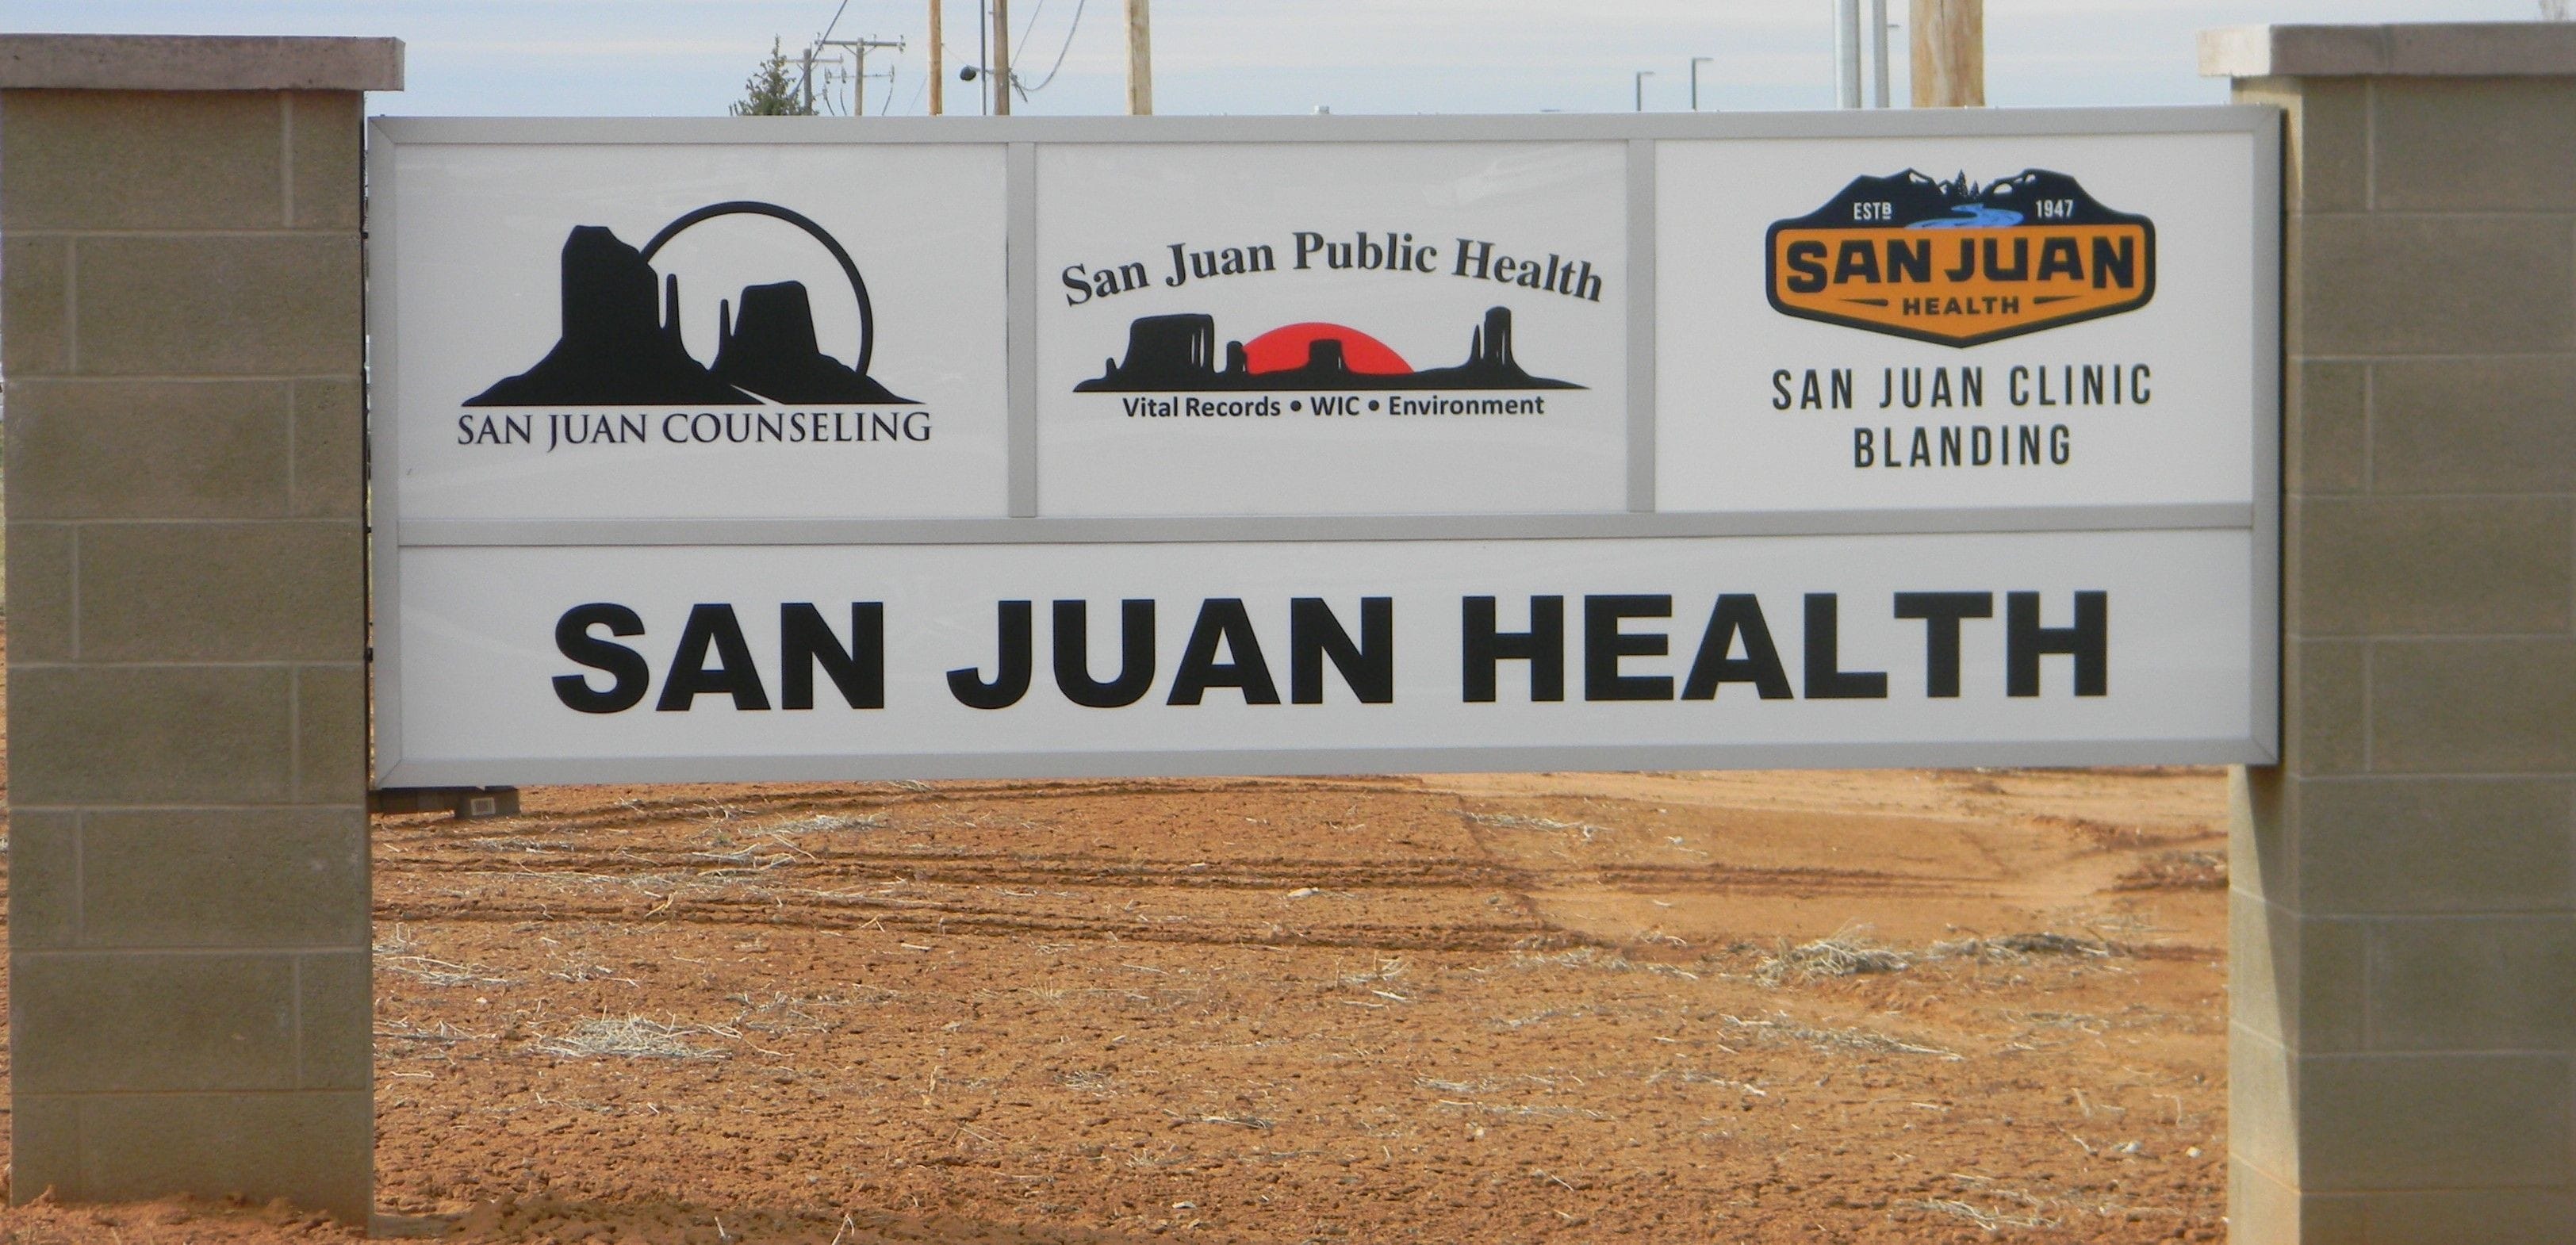 San Juan Counseling Center